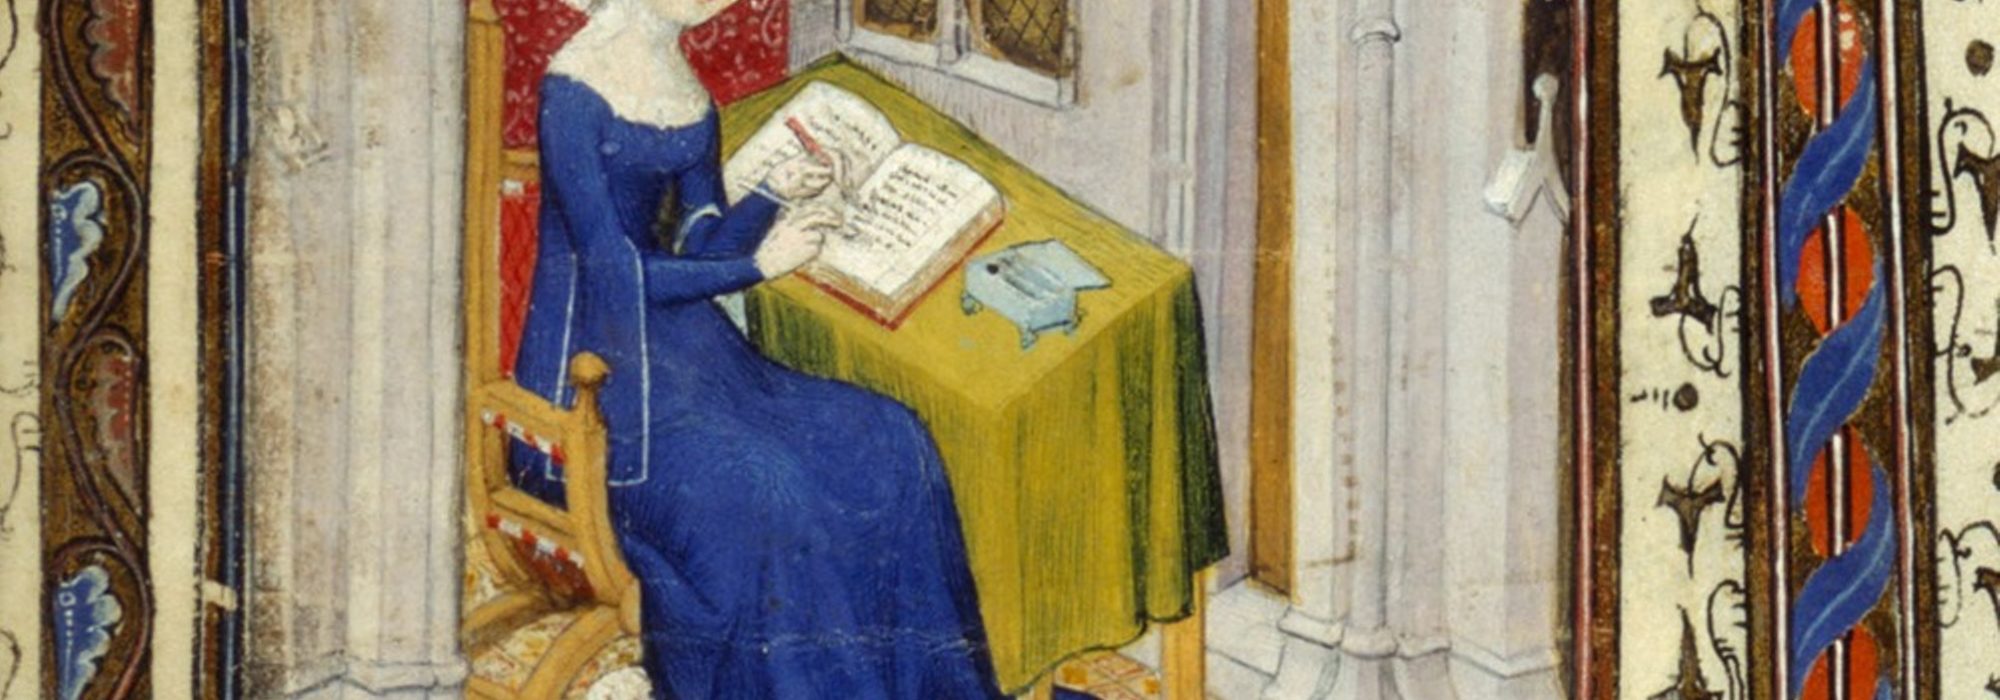 Imagem: miniatura de Christine de Pizan, filósofa e poeta francesa (British Library/reprodução)